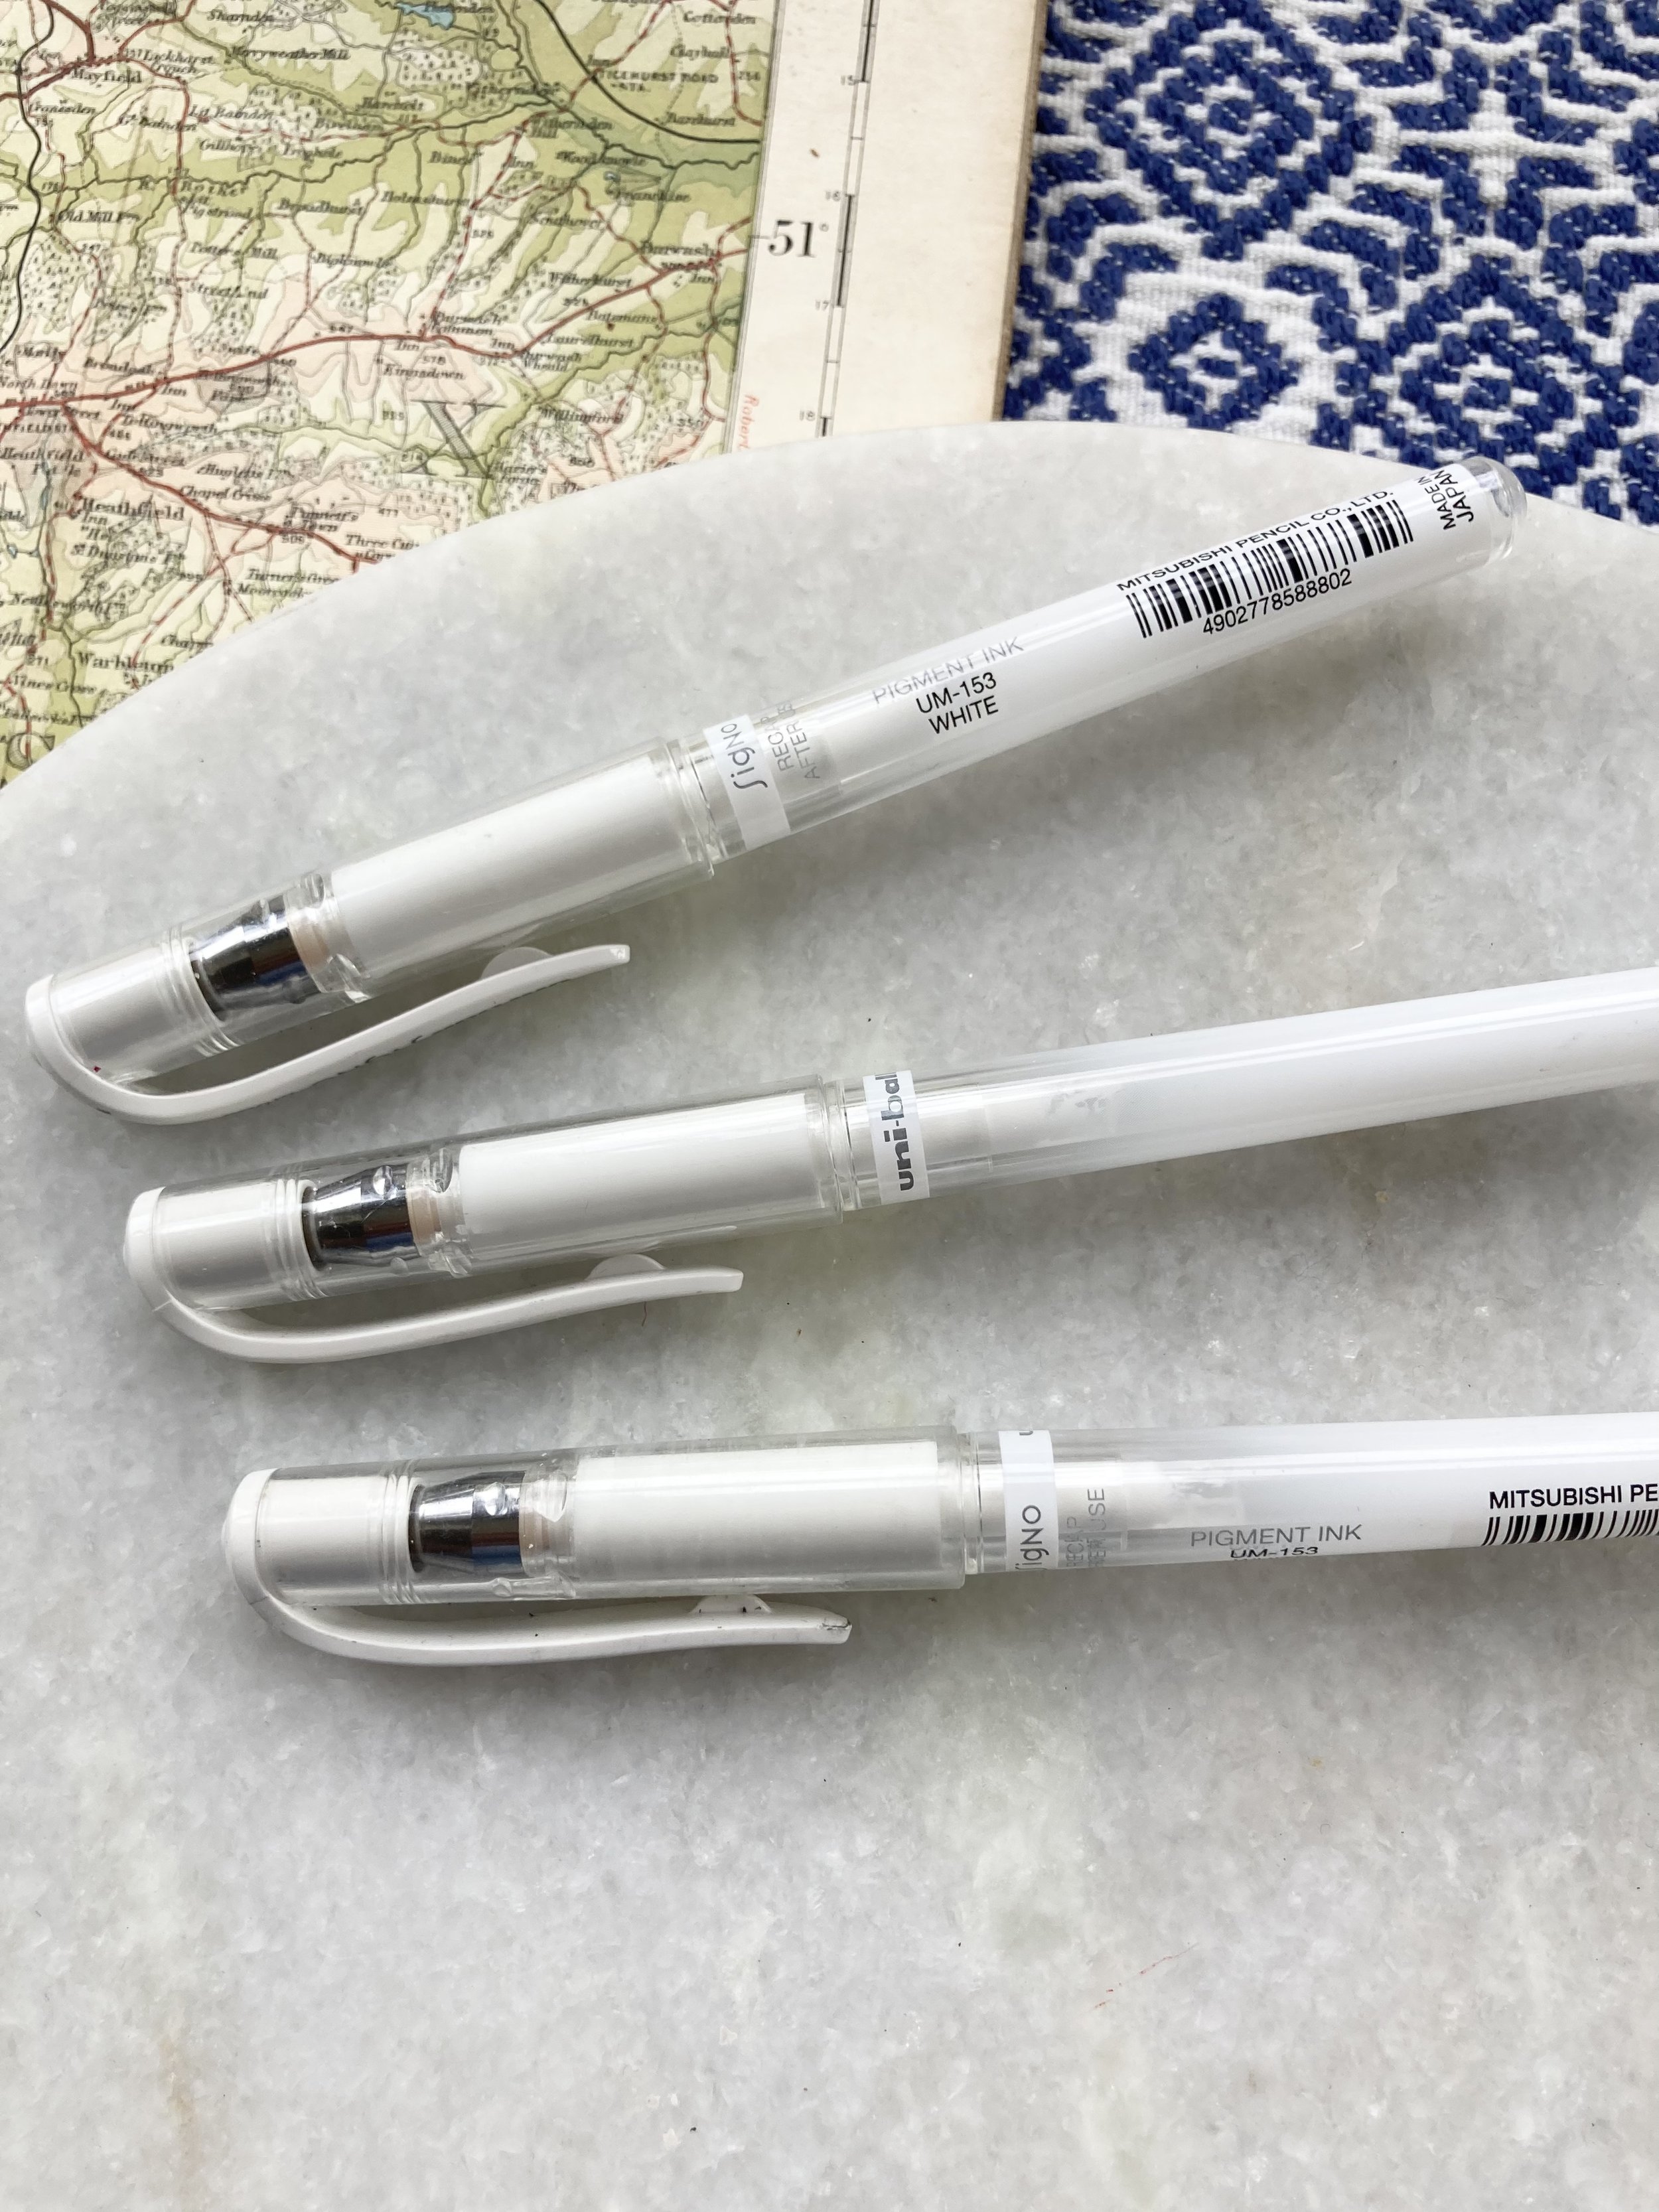 The best white pen — Rachel Tripp